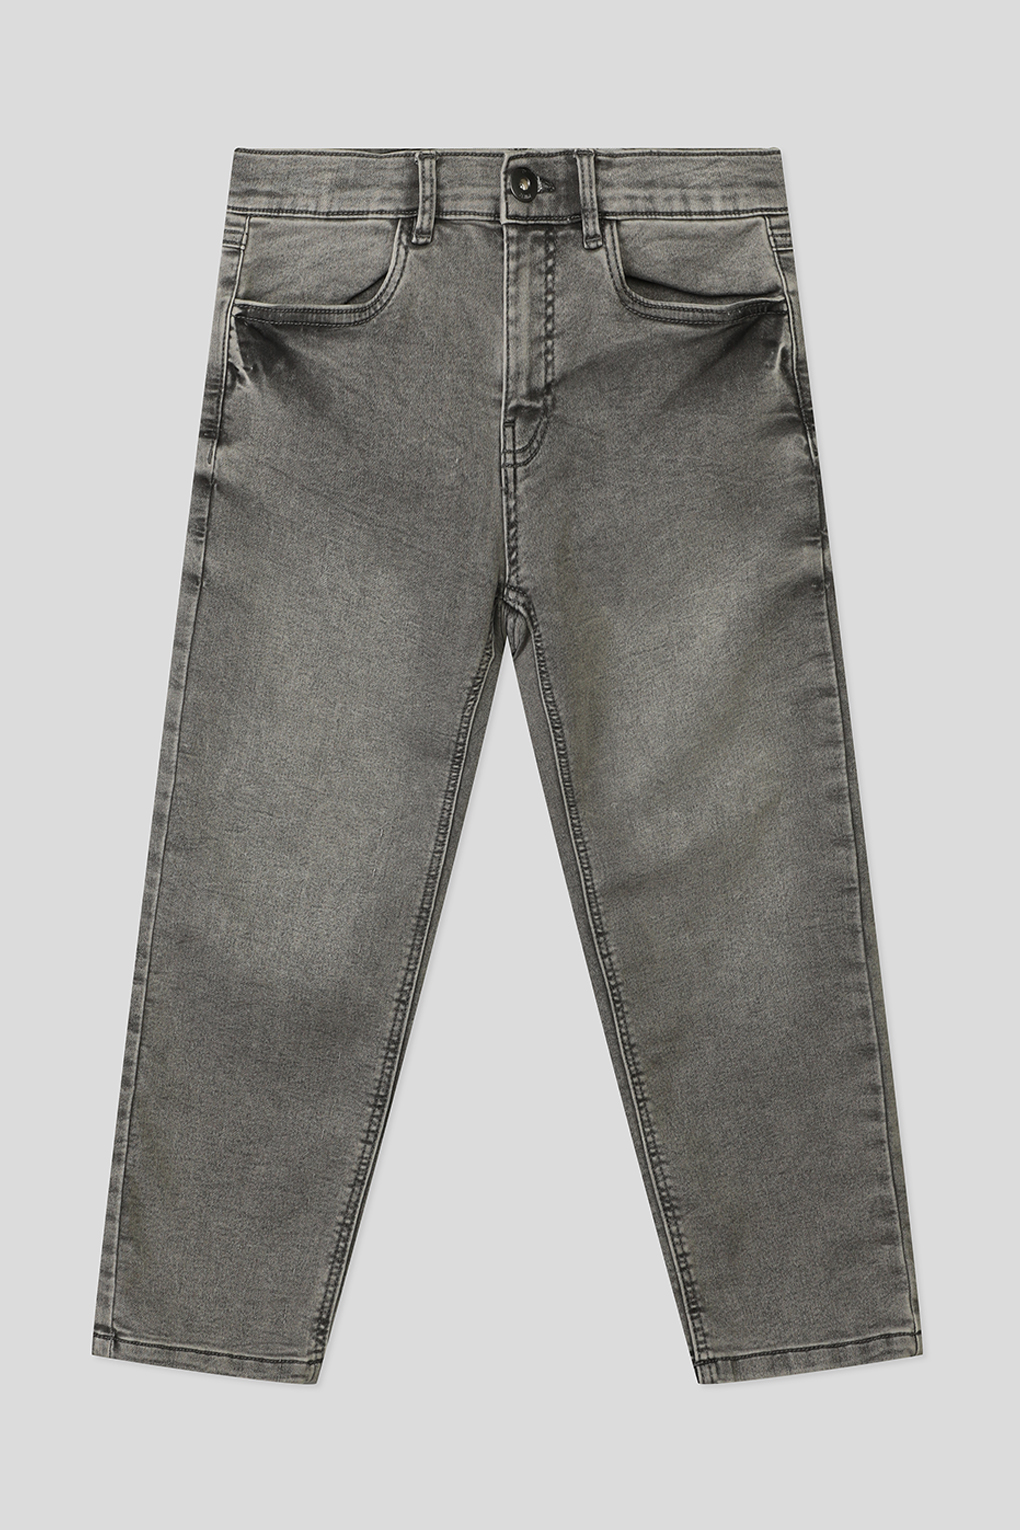 джинсы Reporter Young 231-0110B-45-001-1- для мальчиков, цвет Серый р.170